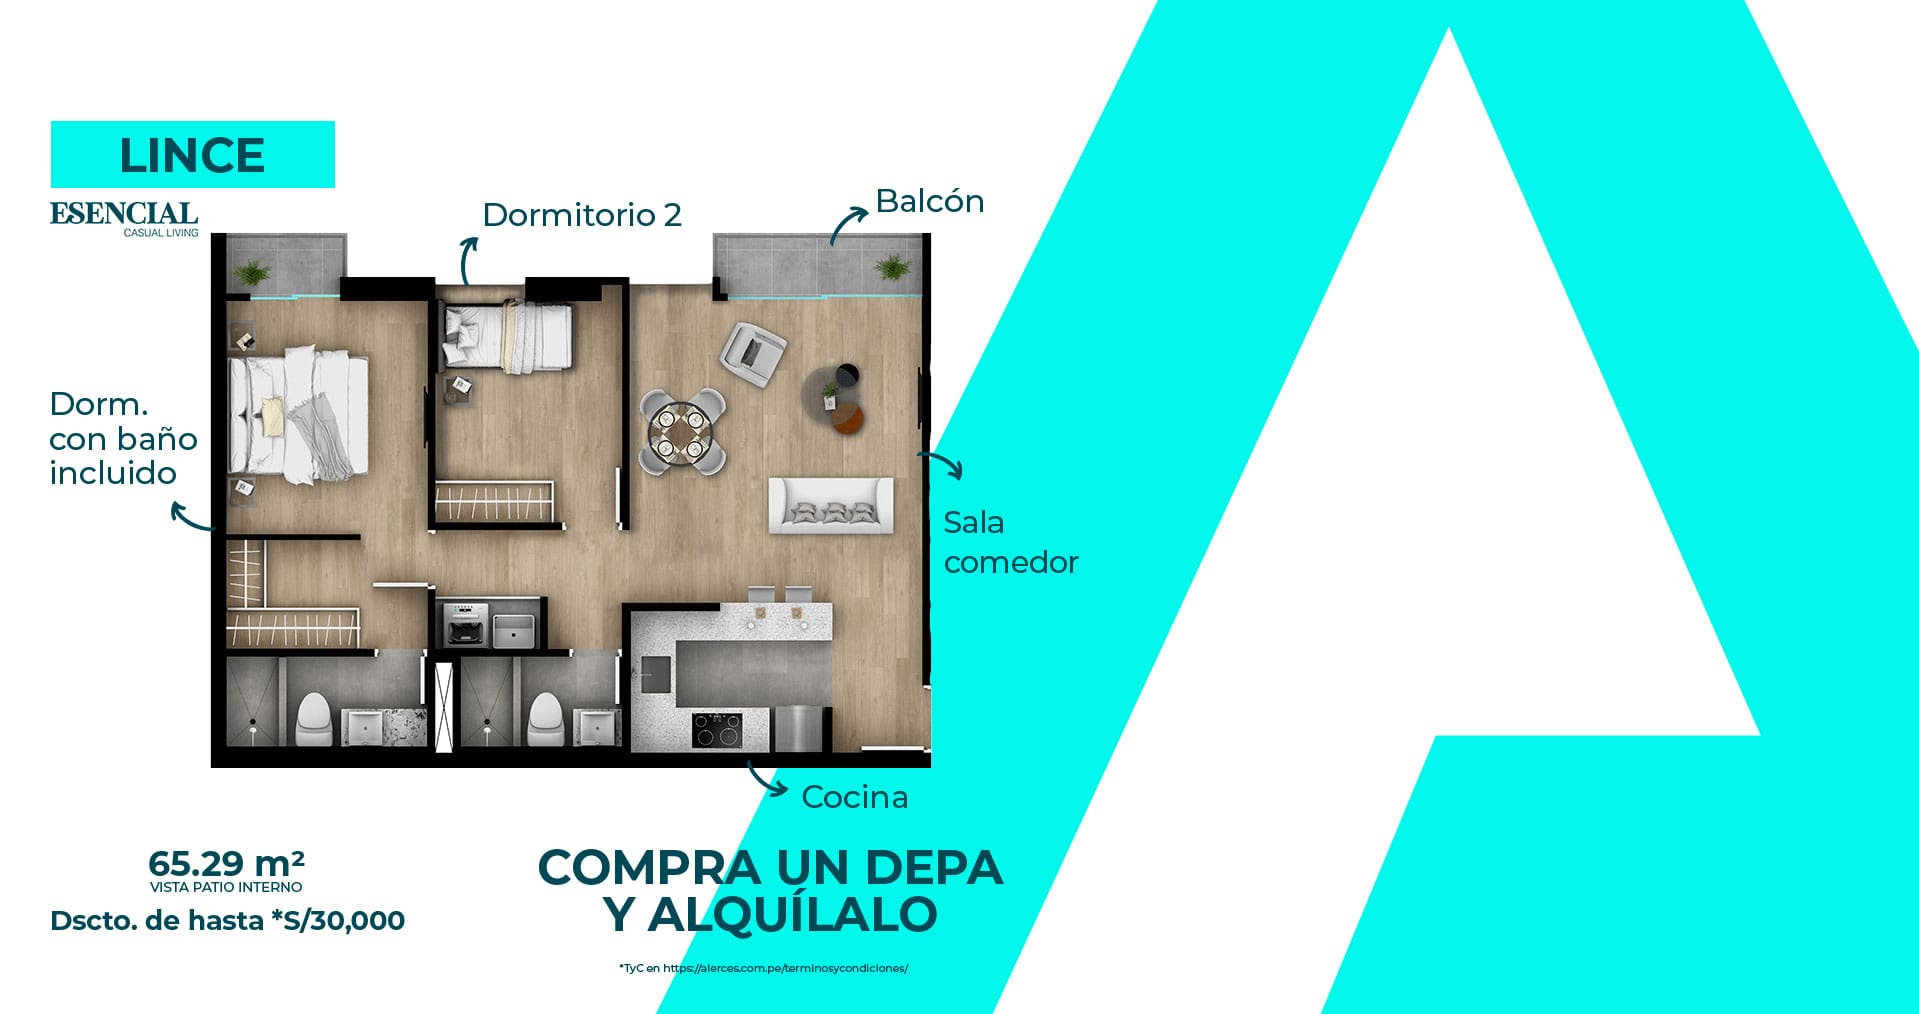 Alerces-inmobiliaria-departamento-2-dormitorios-Web-Home-desktop-header-X07-min-como-objeto-inteligente-1-min